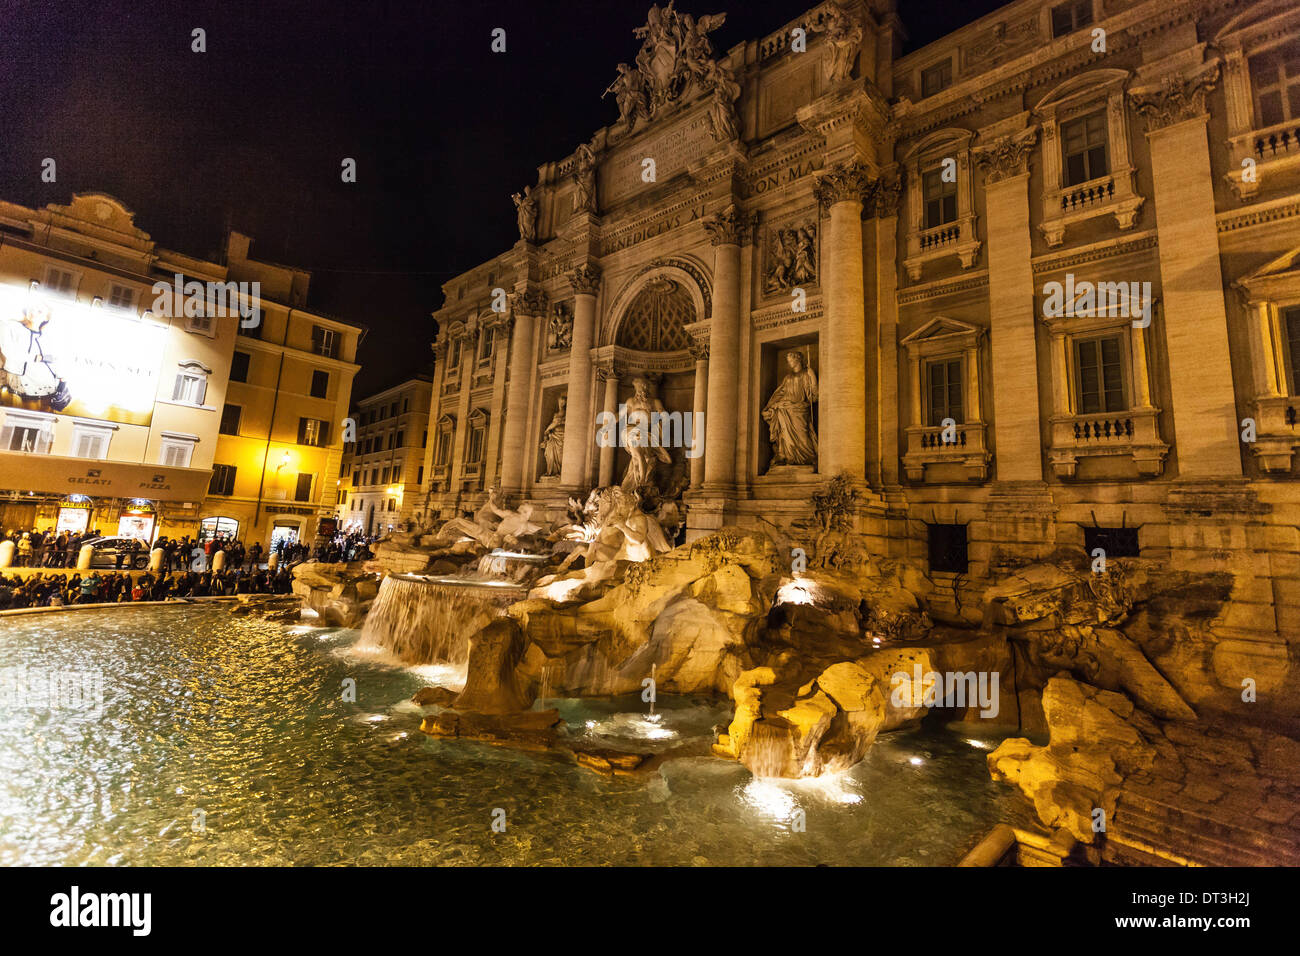 Fontana Di Trevi at night, Rome, Italy. Stock Photo